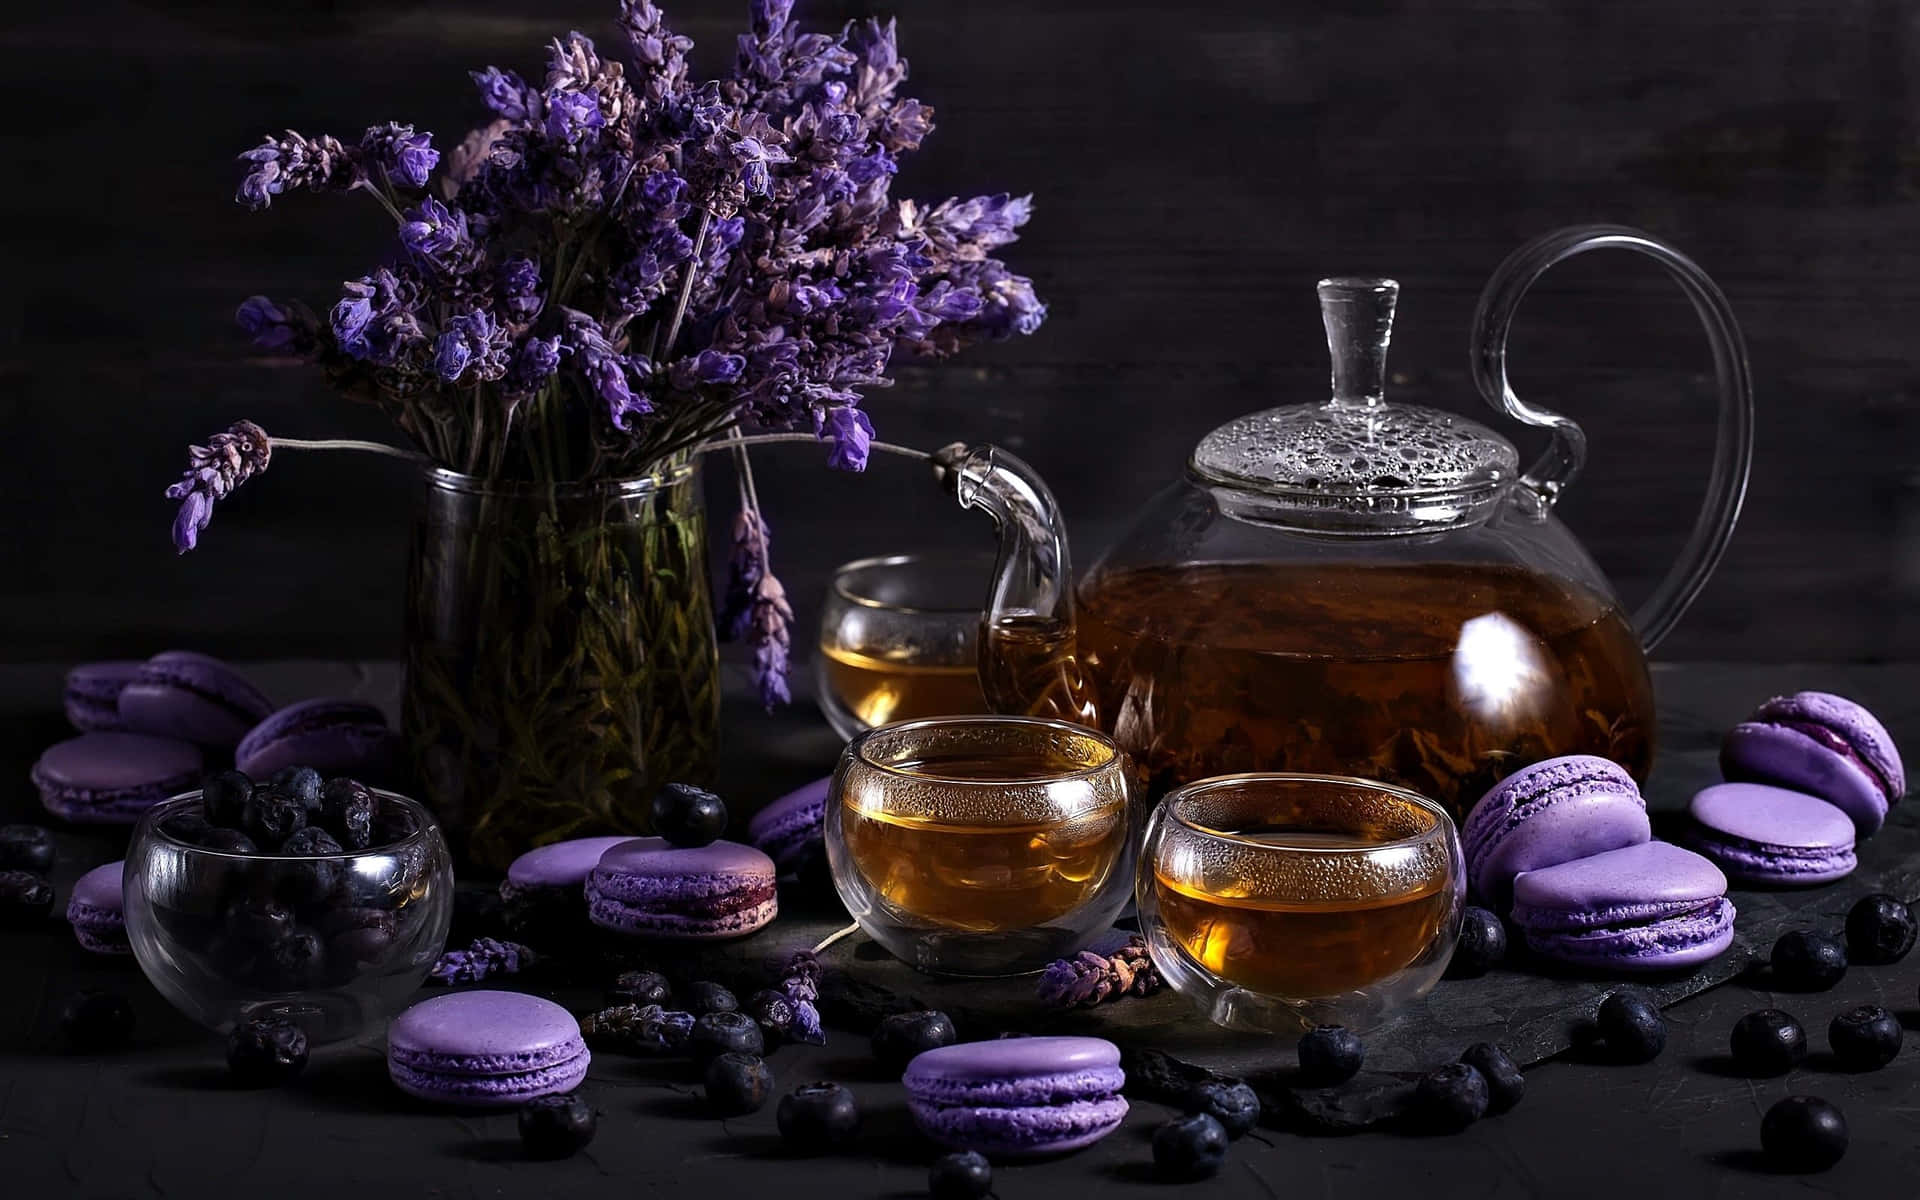 Lavendellilafarbener Tee Mit Macarons Wallpaper